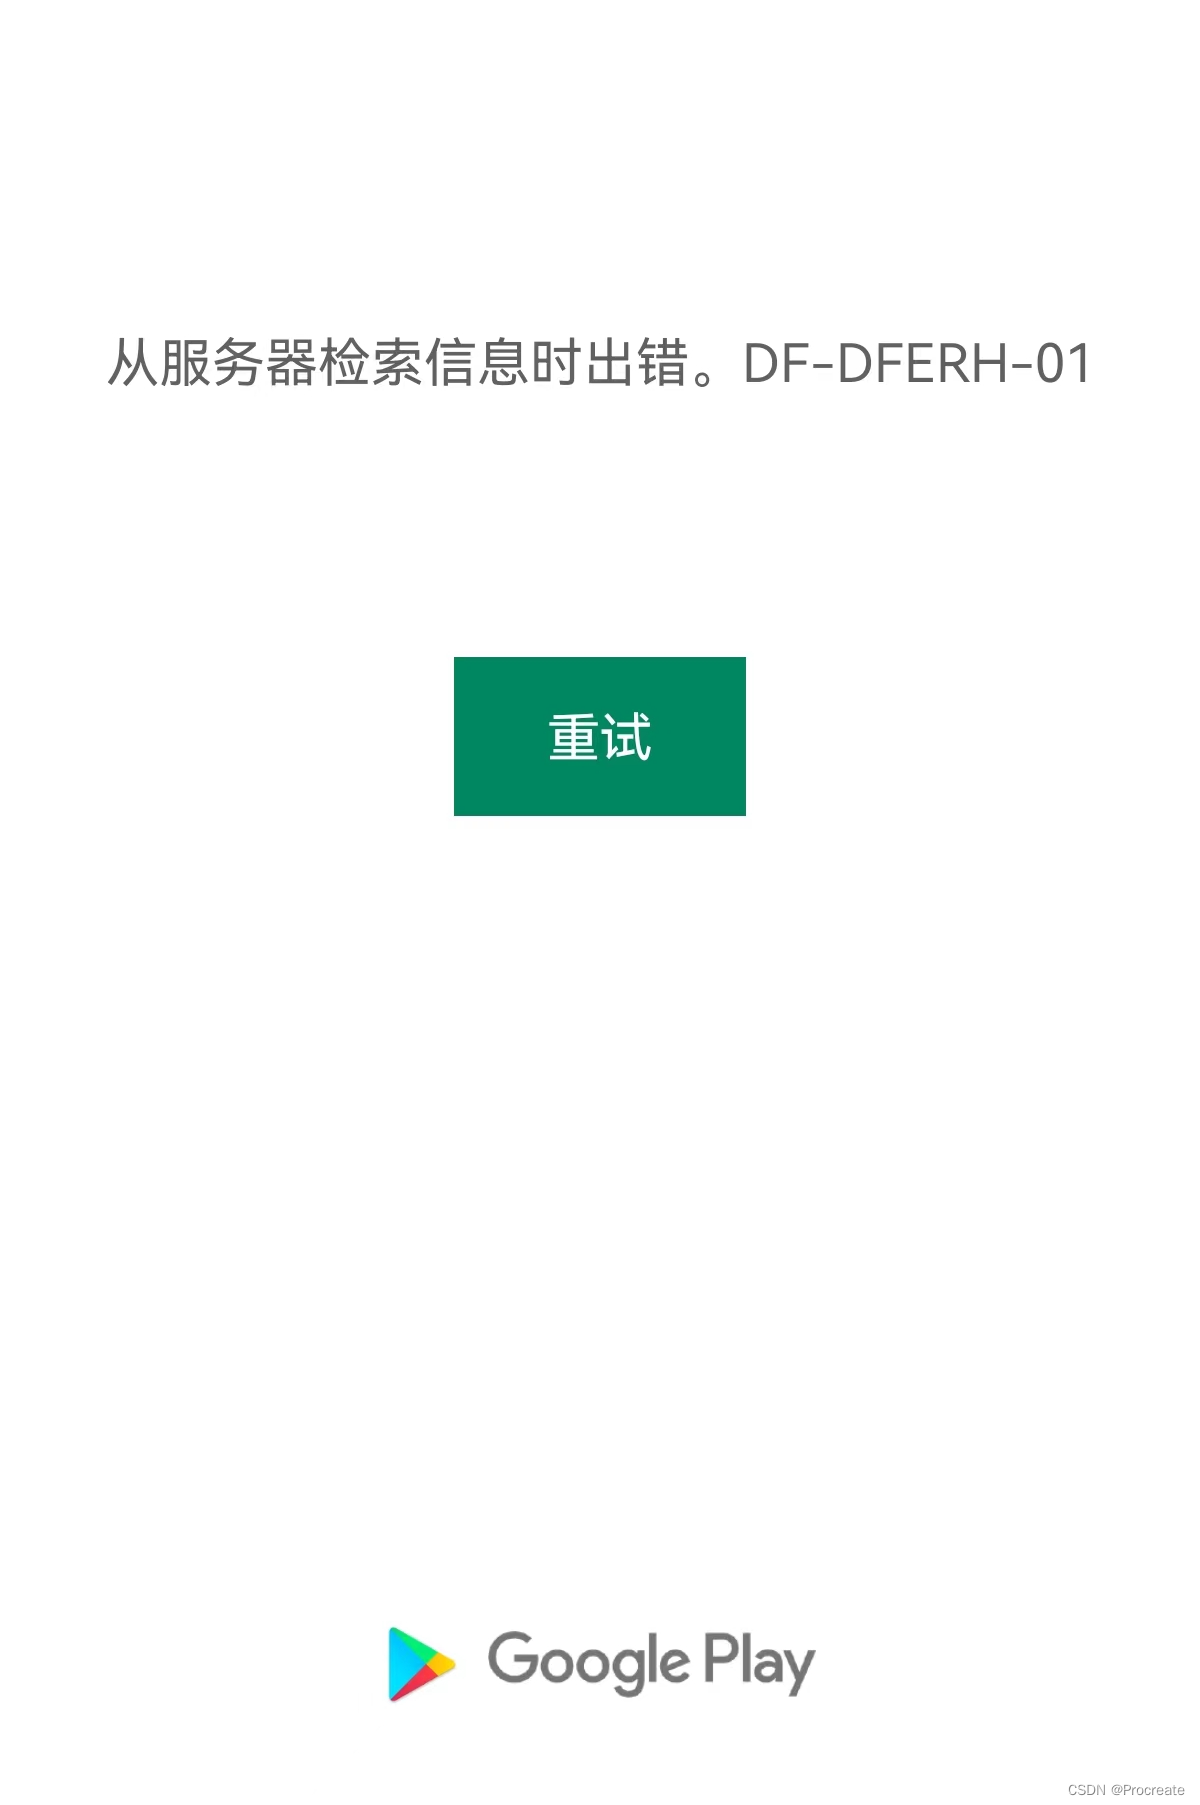 从服务器检索信息时出错,DF-DFERH-01